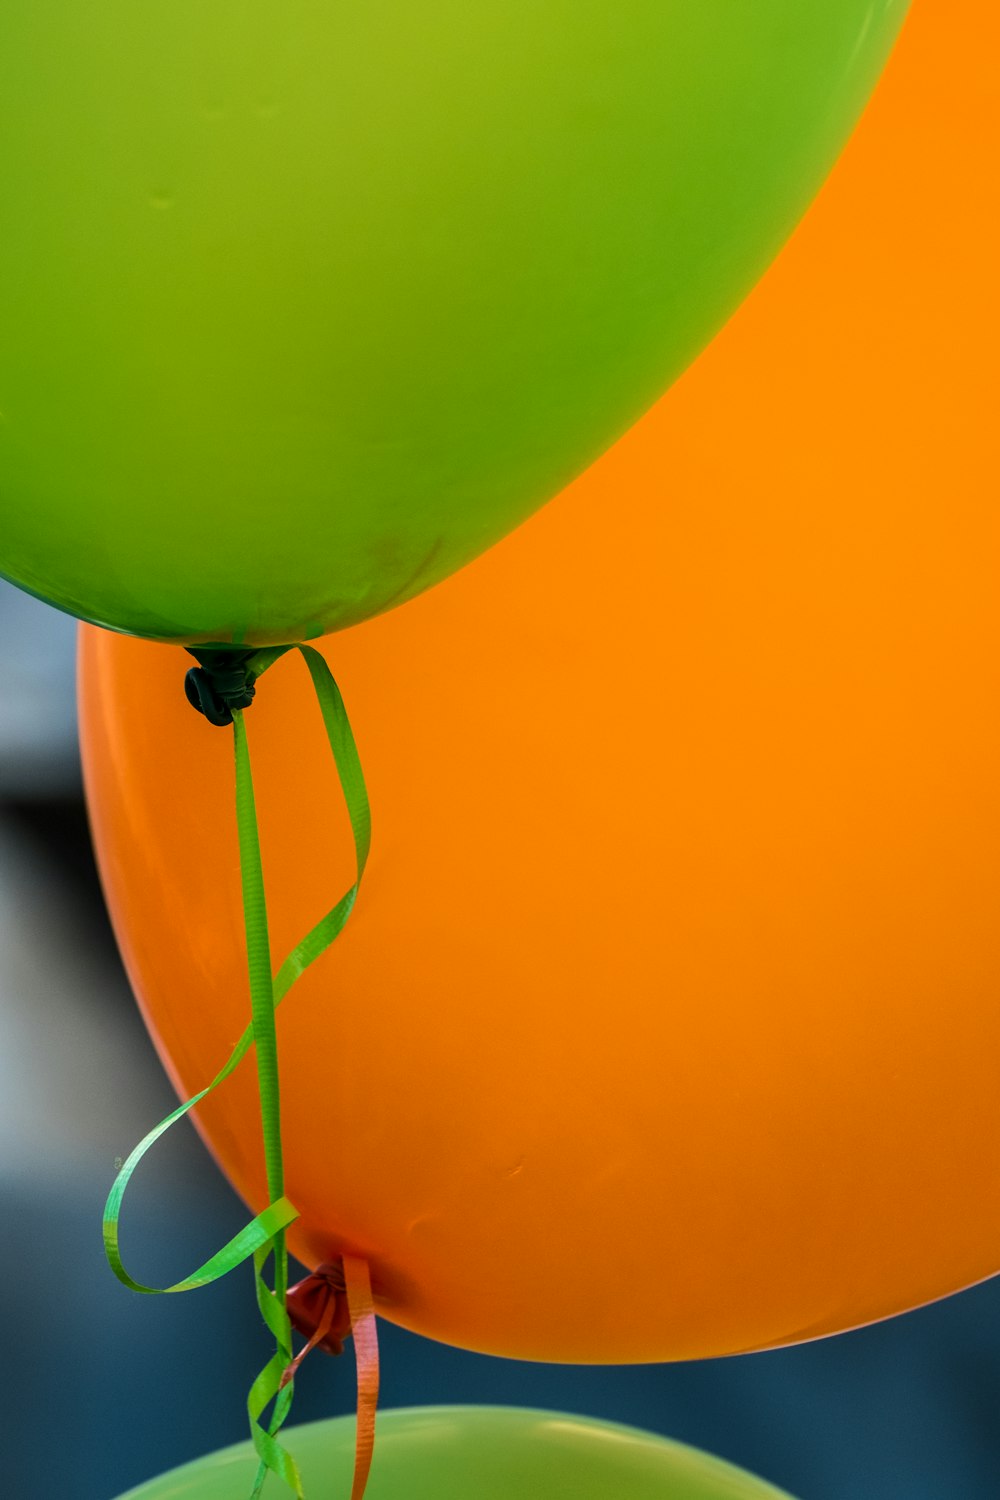 Flachfokusfotografie von grünem und orangefarbenem Ballon